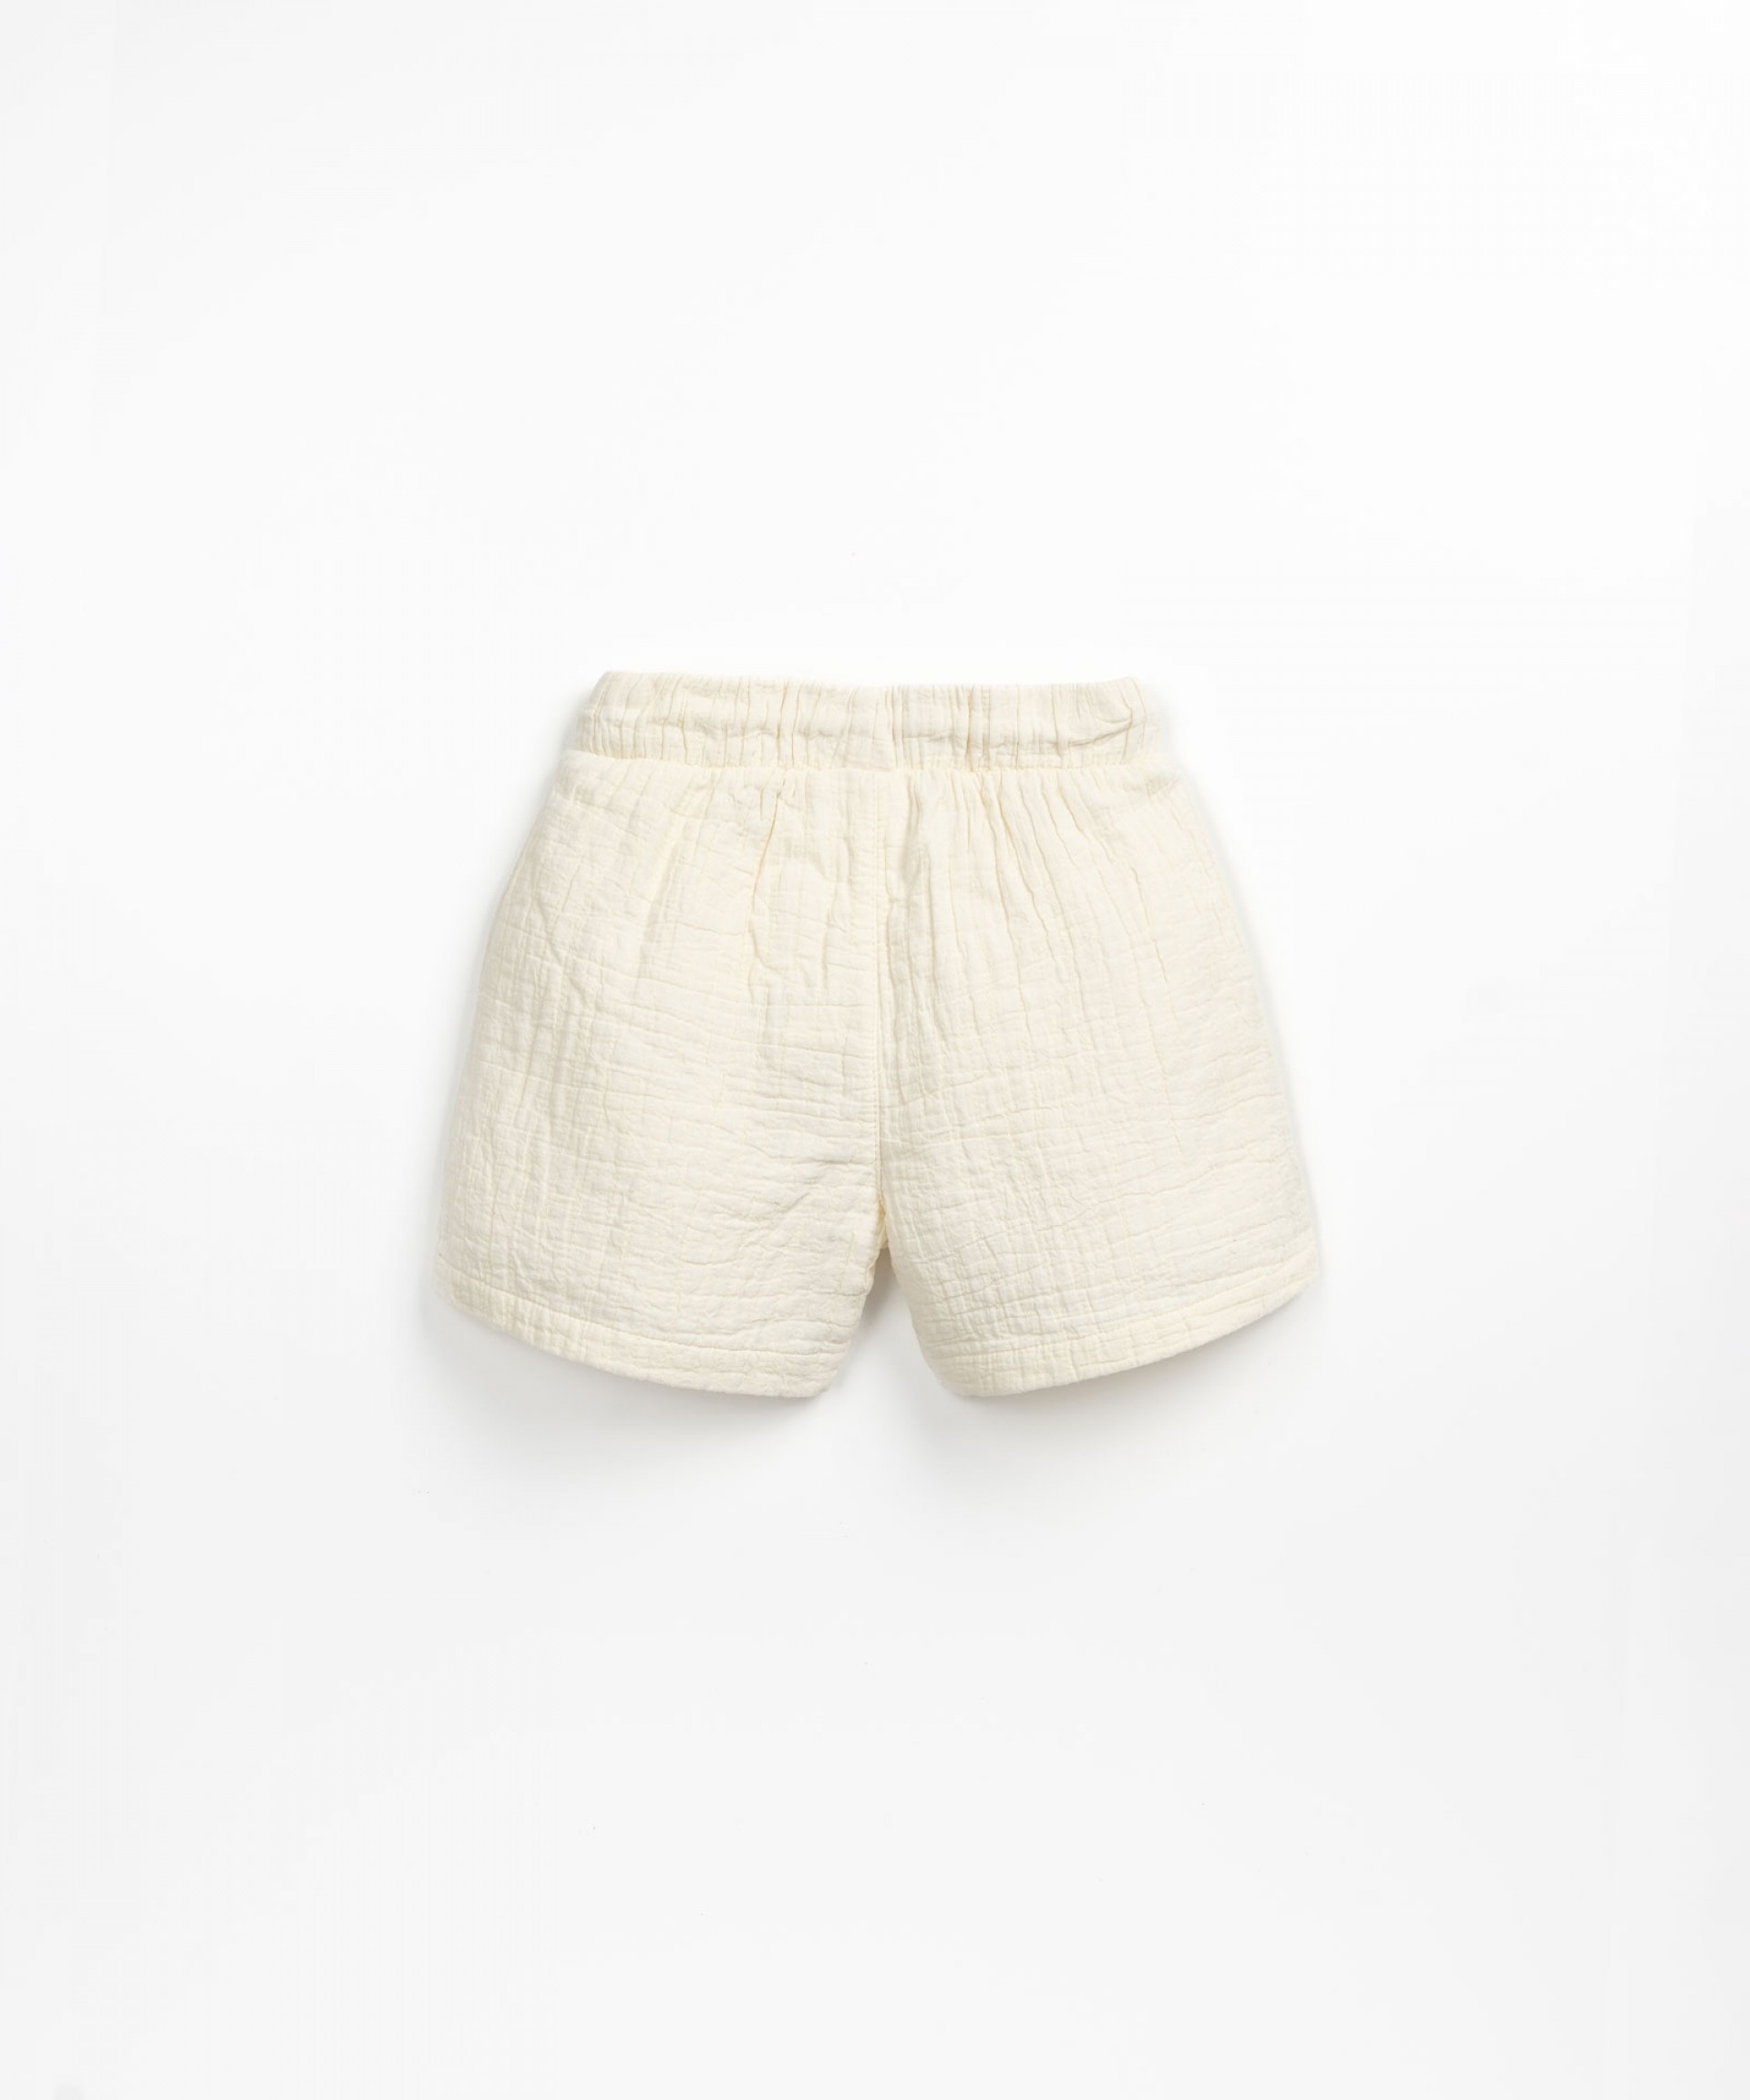 Short en tissu avec des poches | Textile Art